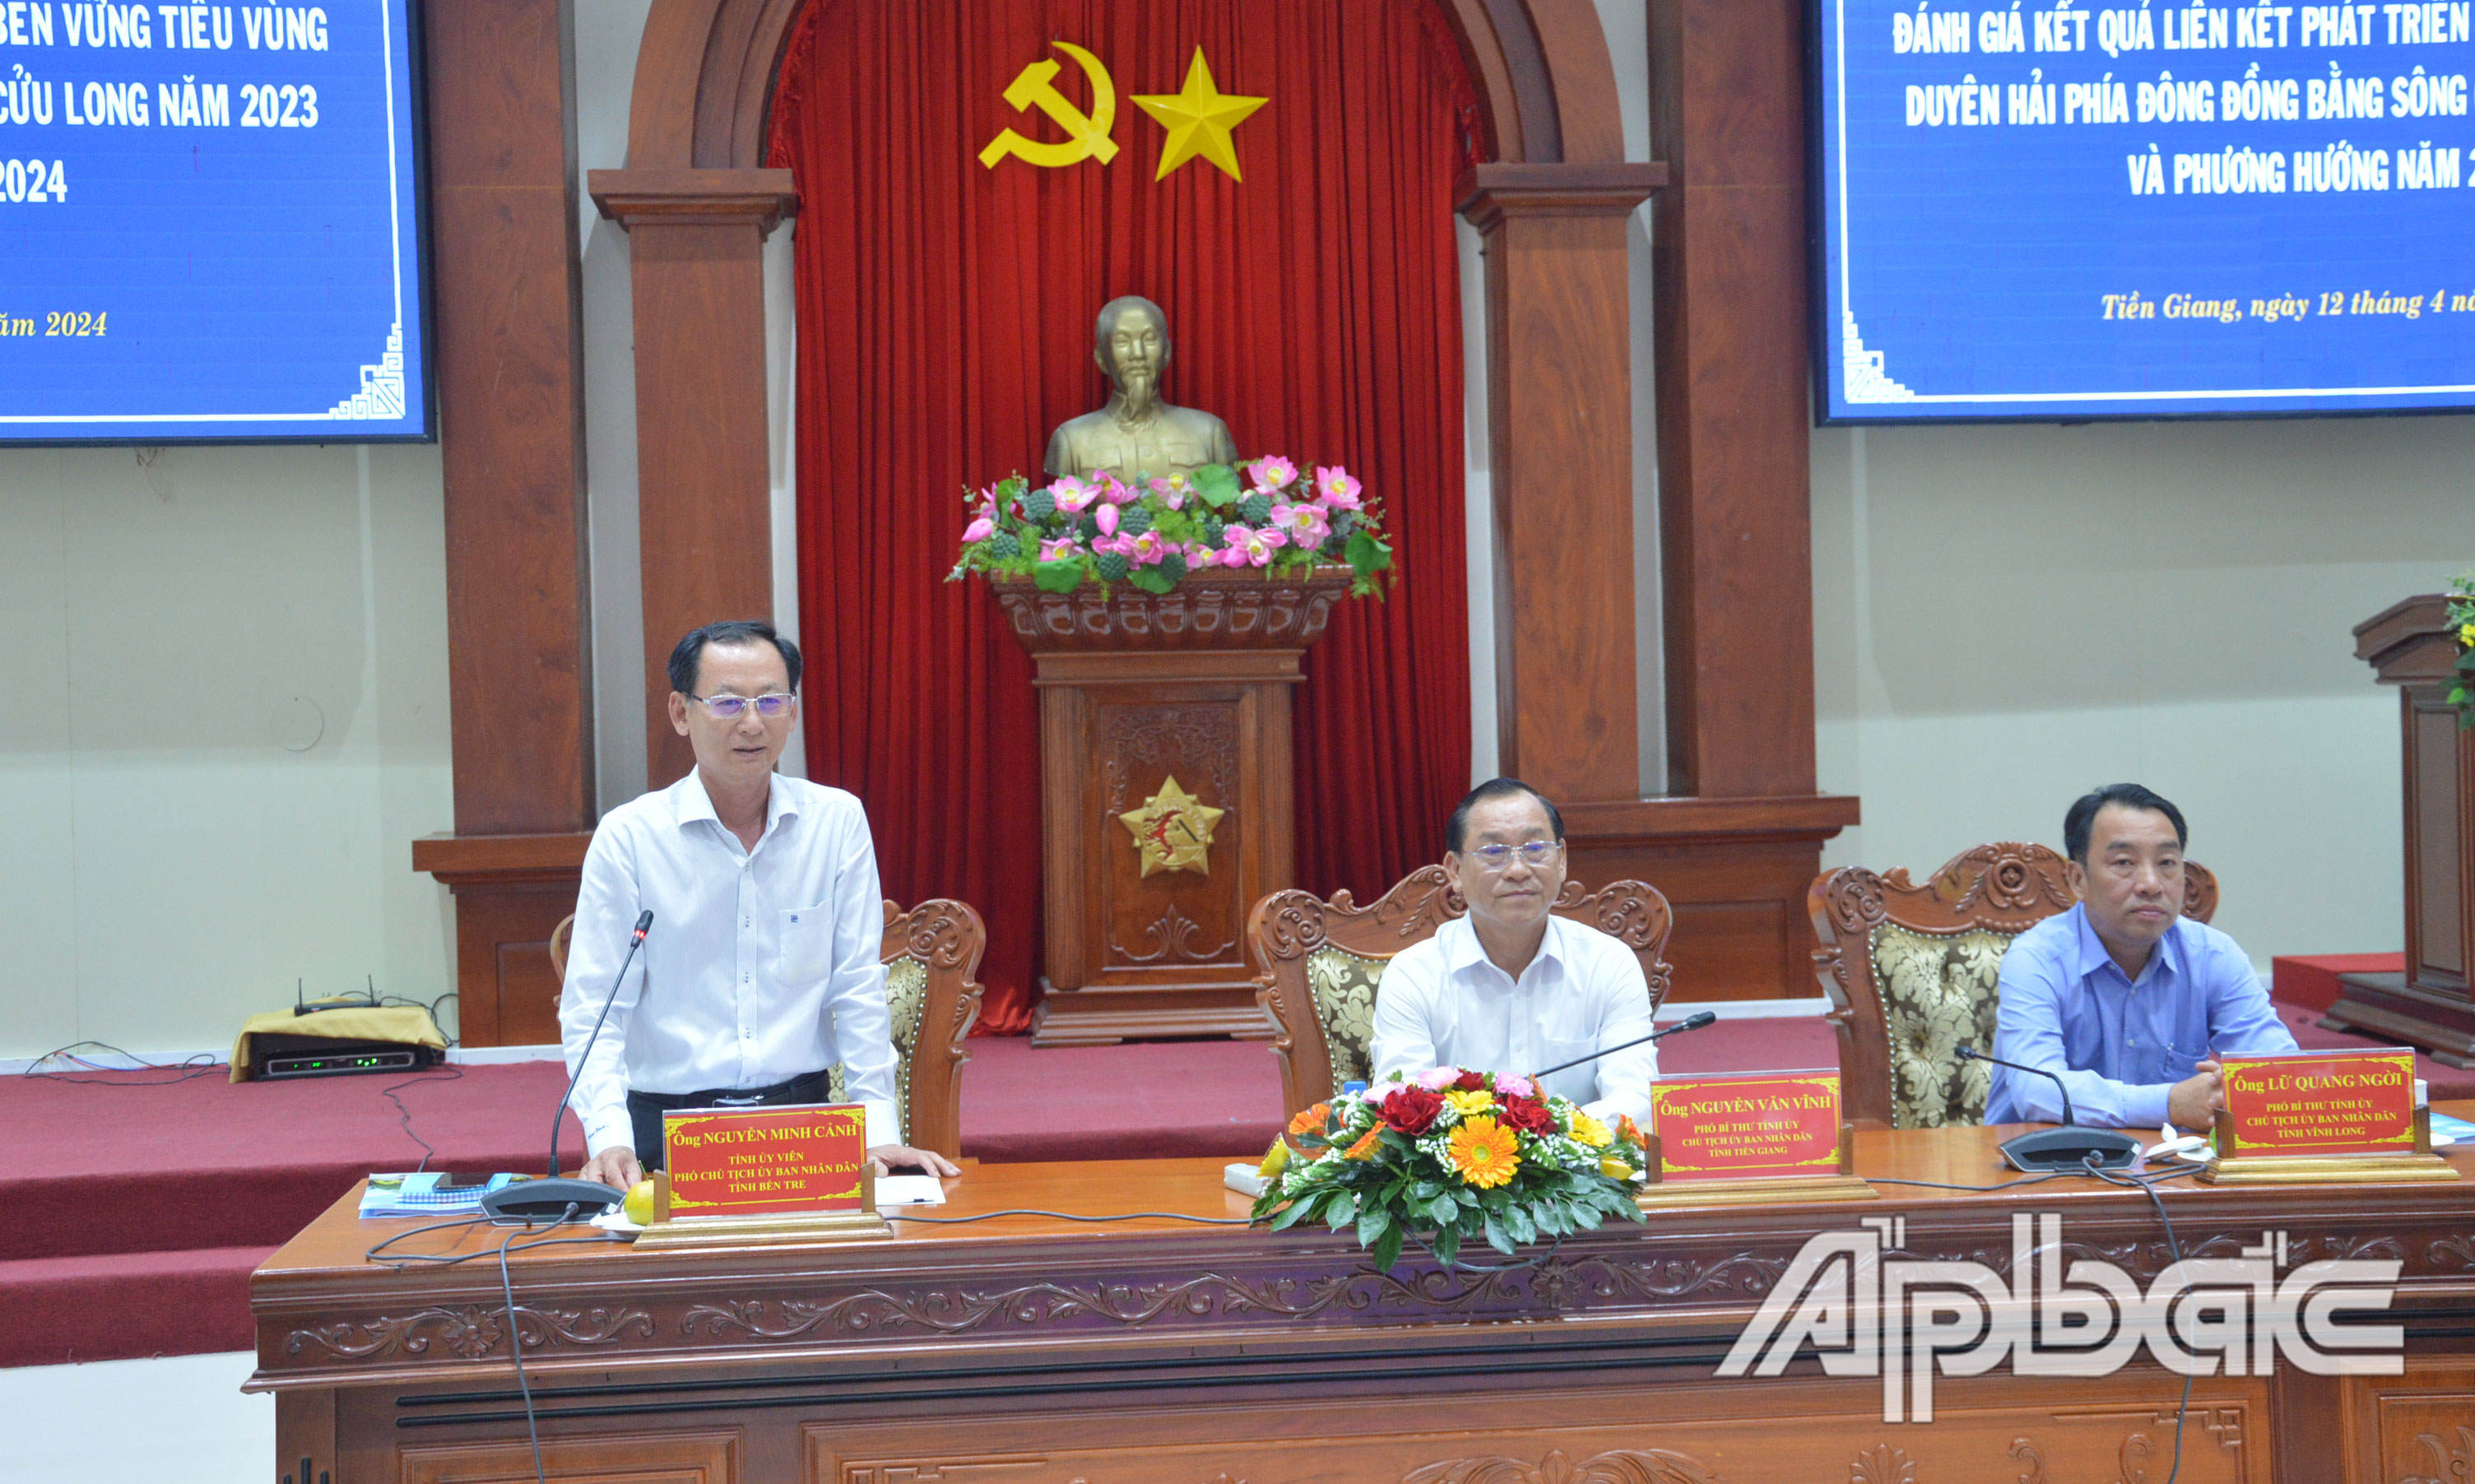 Đồng chí Nguyễn Minh Cảnh phát biểu tại hội nghị.